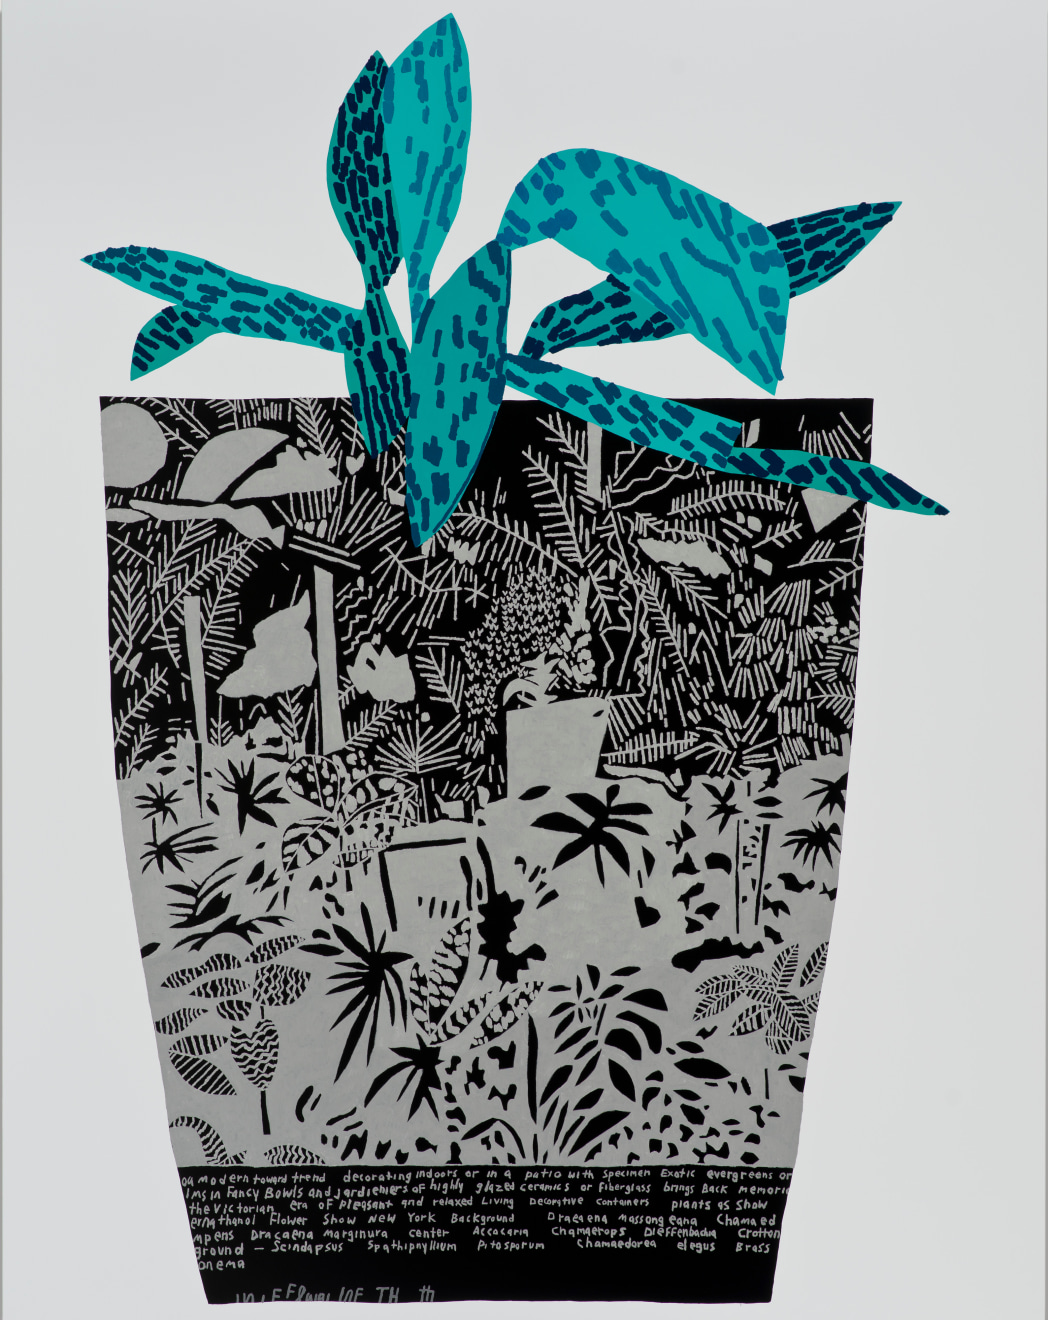 Jonas Wood, Black Landscape Pot with Blue Plant, 2014